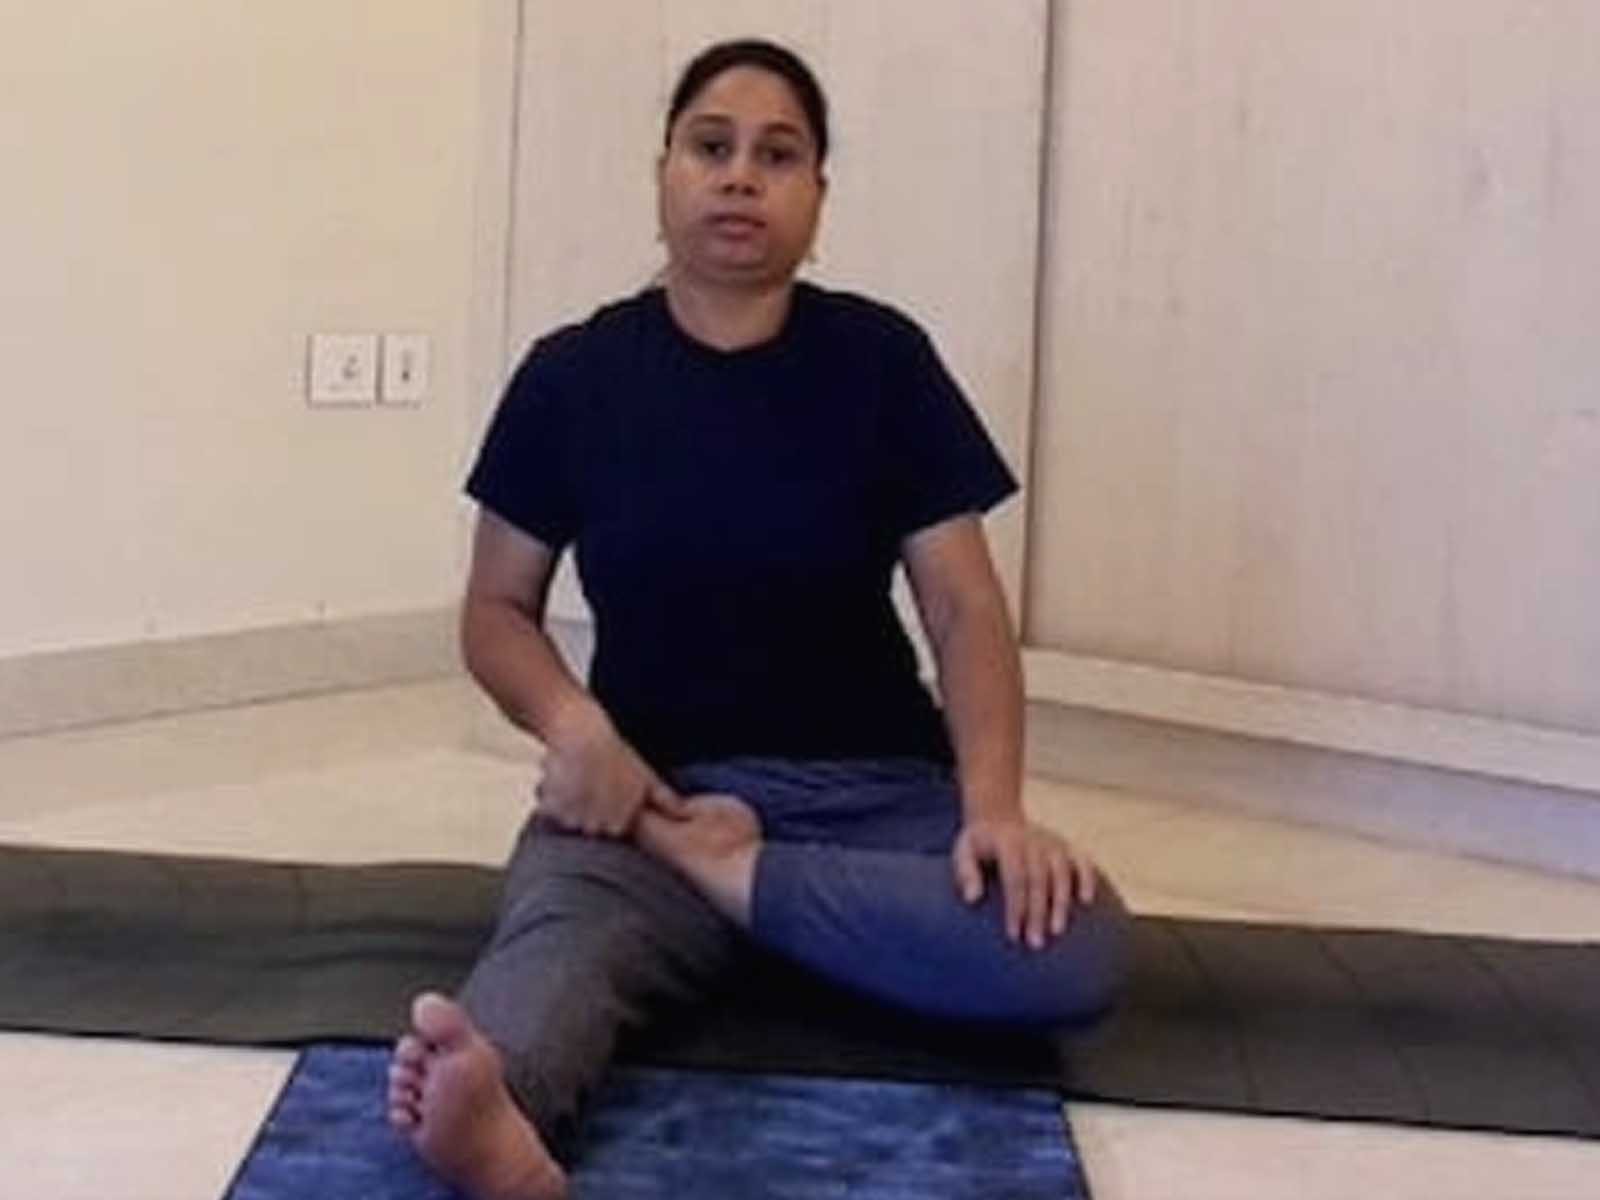 Yoga Session: ਸਿਹਤਮੰਦ ਰਹਿਣ ਲਈ ਅਪਣਾਓ ਯੋਗ, ਰੋਜ਼ਾਨਾ ਕਰੋ ਇਹ ਆਸਾਨ ਆਸਣ 